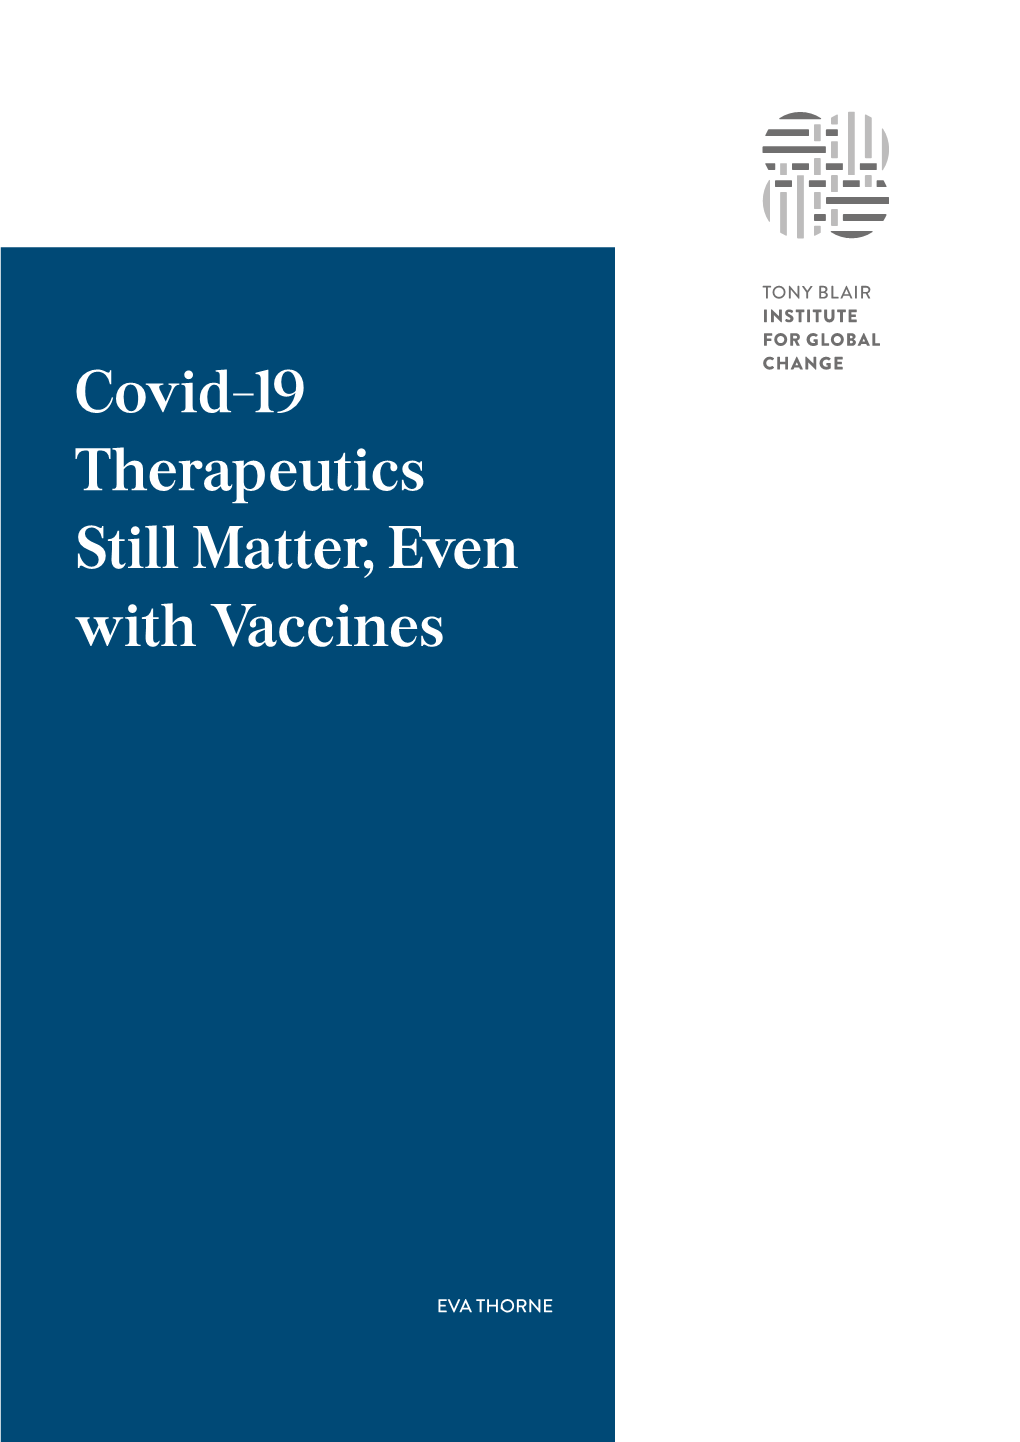 Covid-19 Therapeutics Still Matter, Even with Vaccines